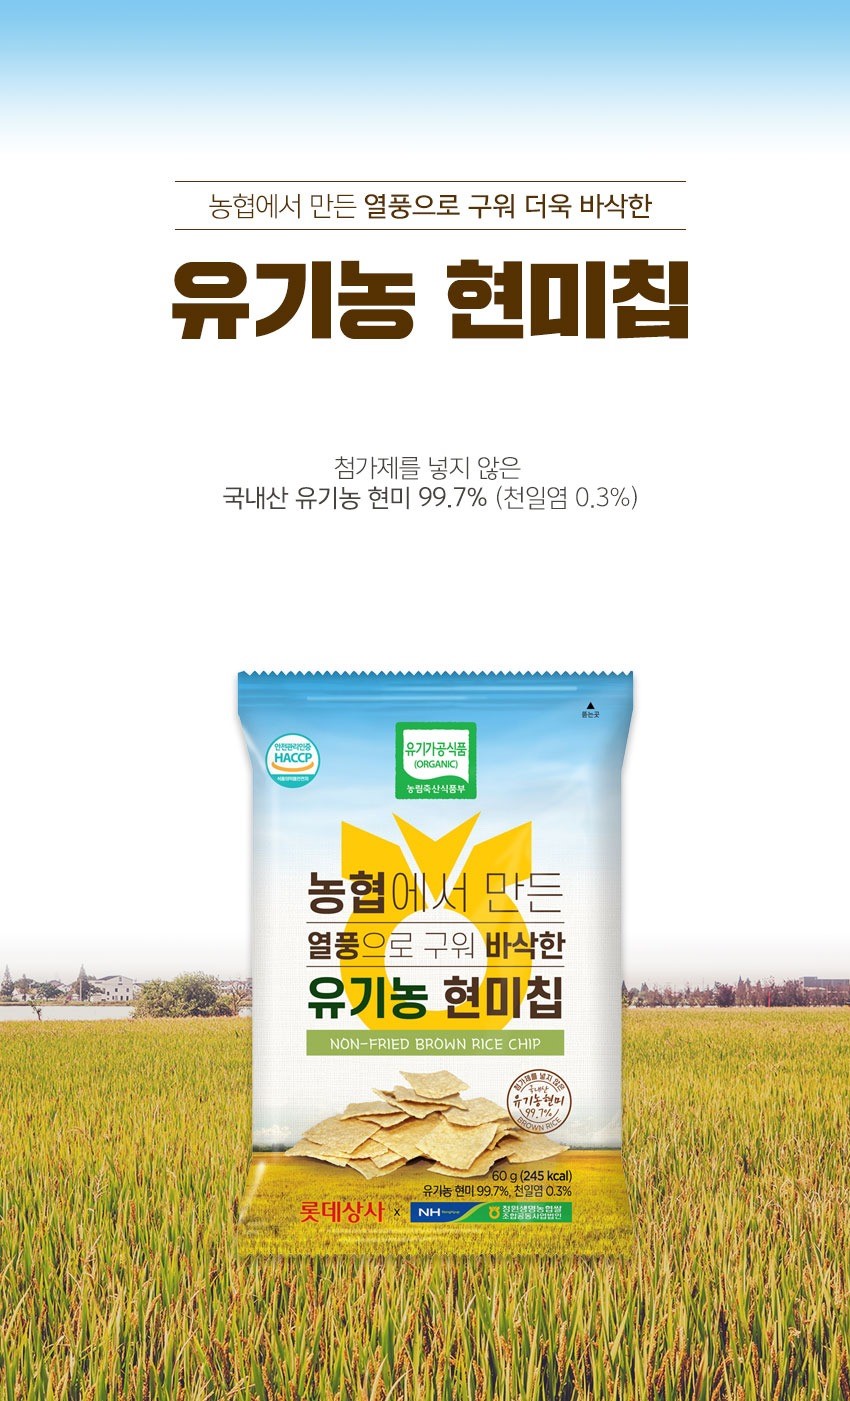 韓國食品-[농협] 튀기지않은유기농현미칩 60g